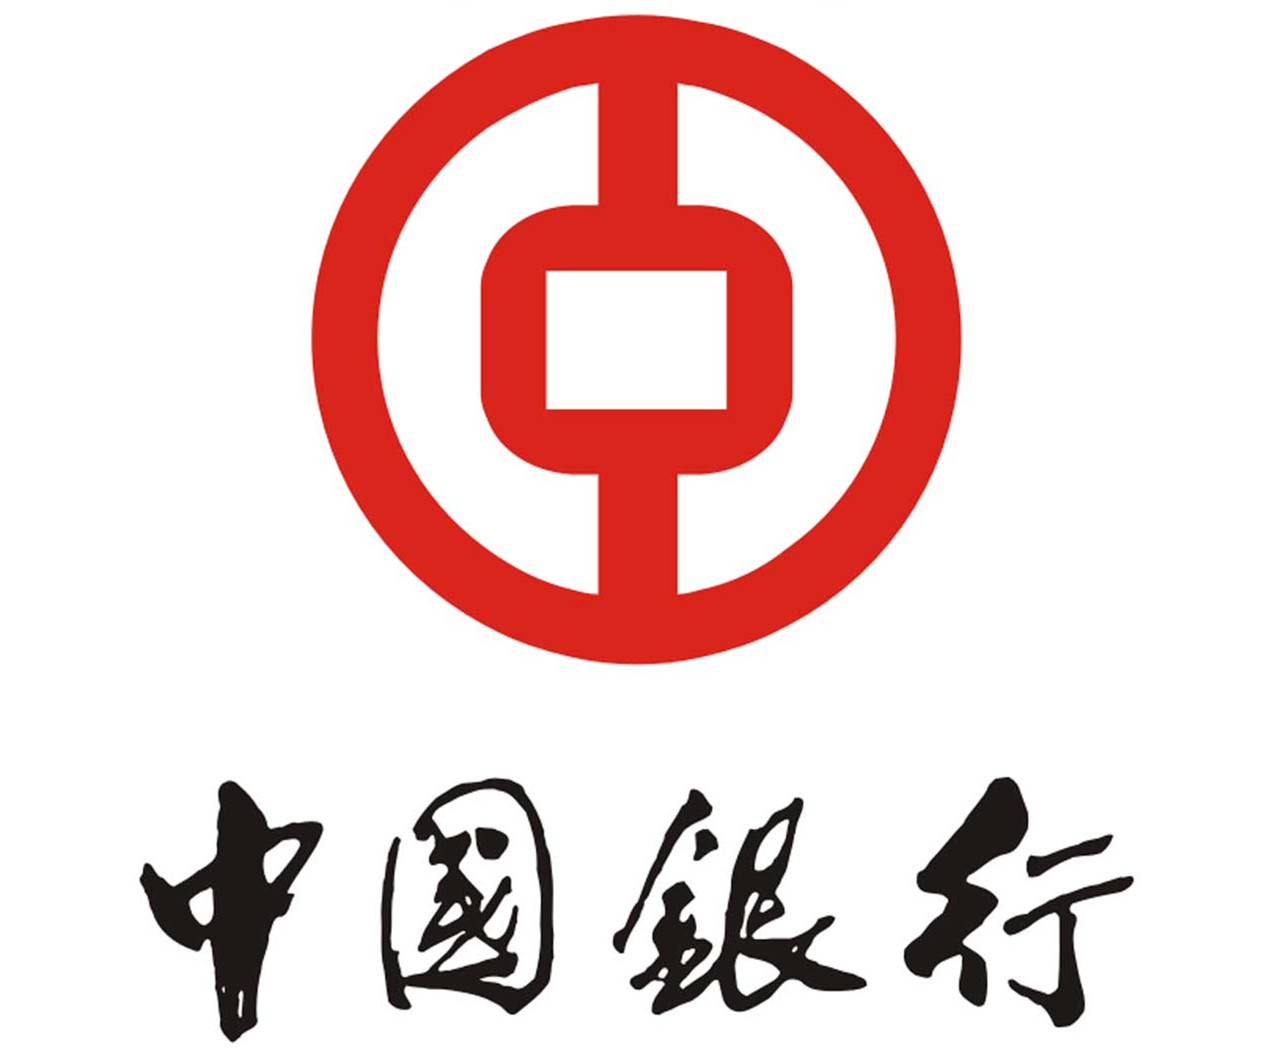 中国银行中国银行标志以中字和古钱形相互结合而构成